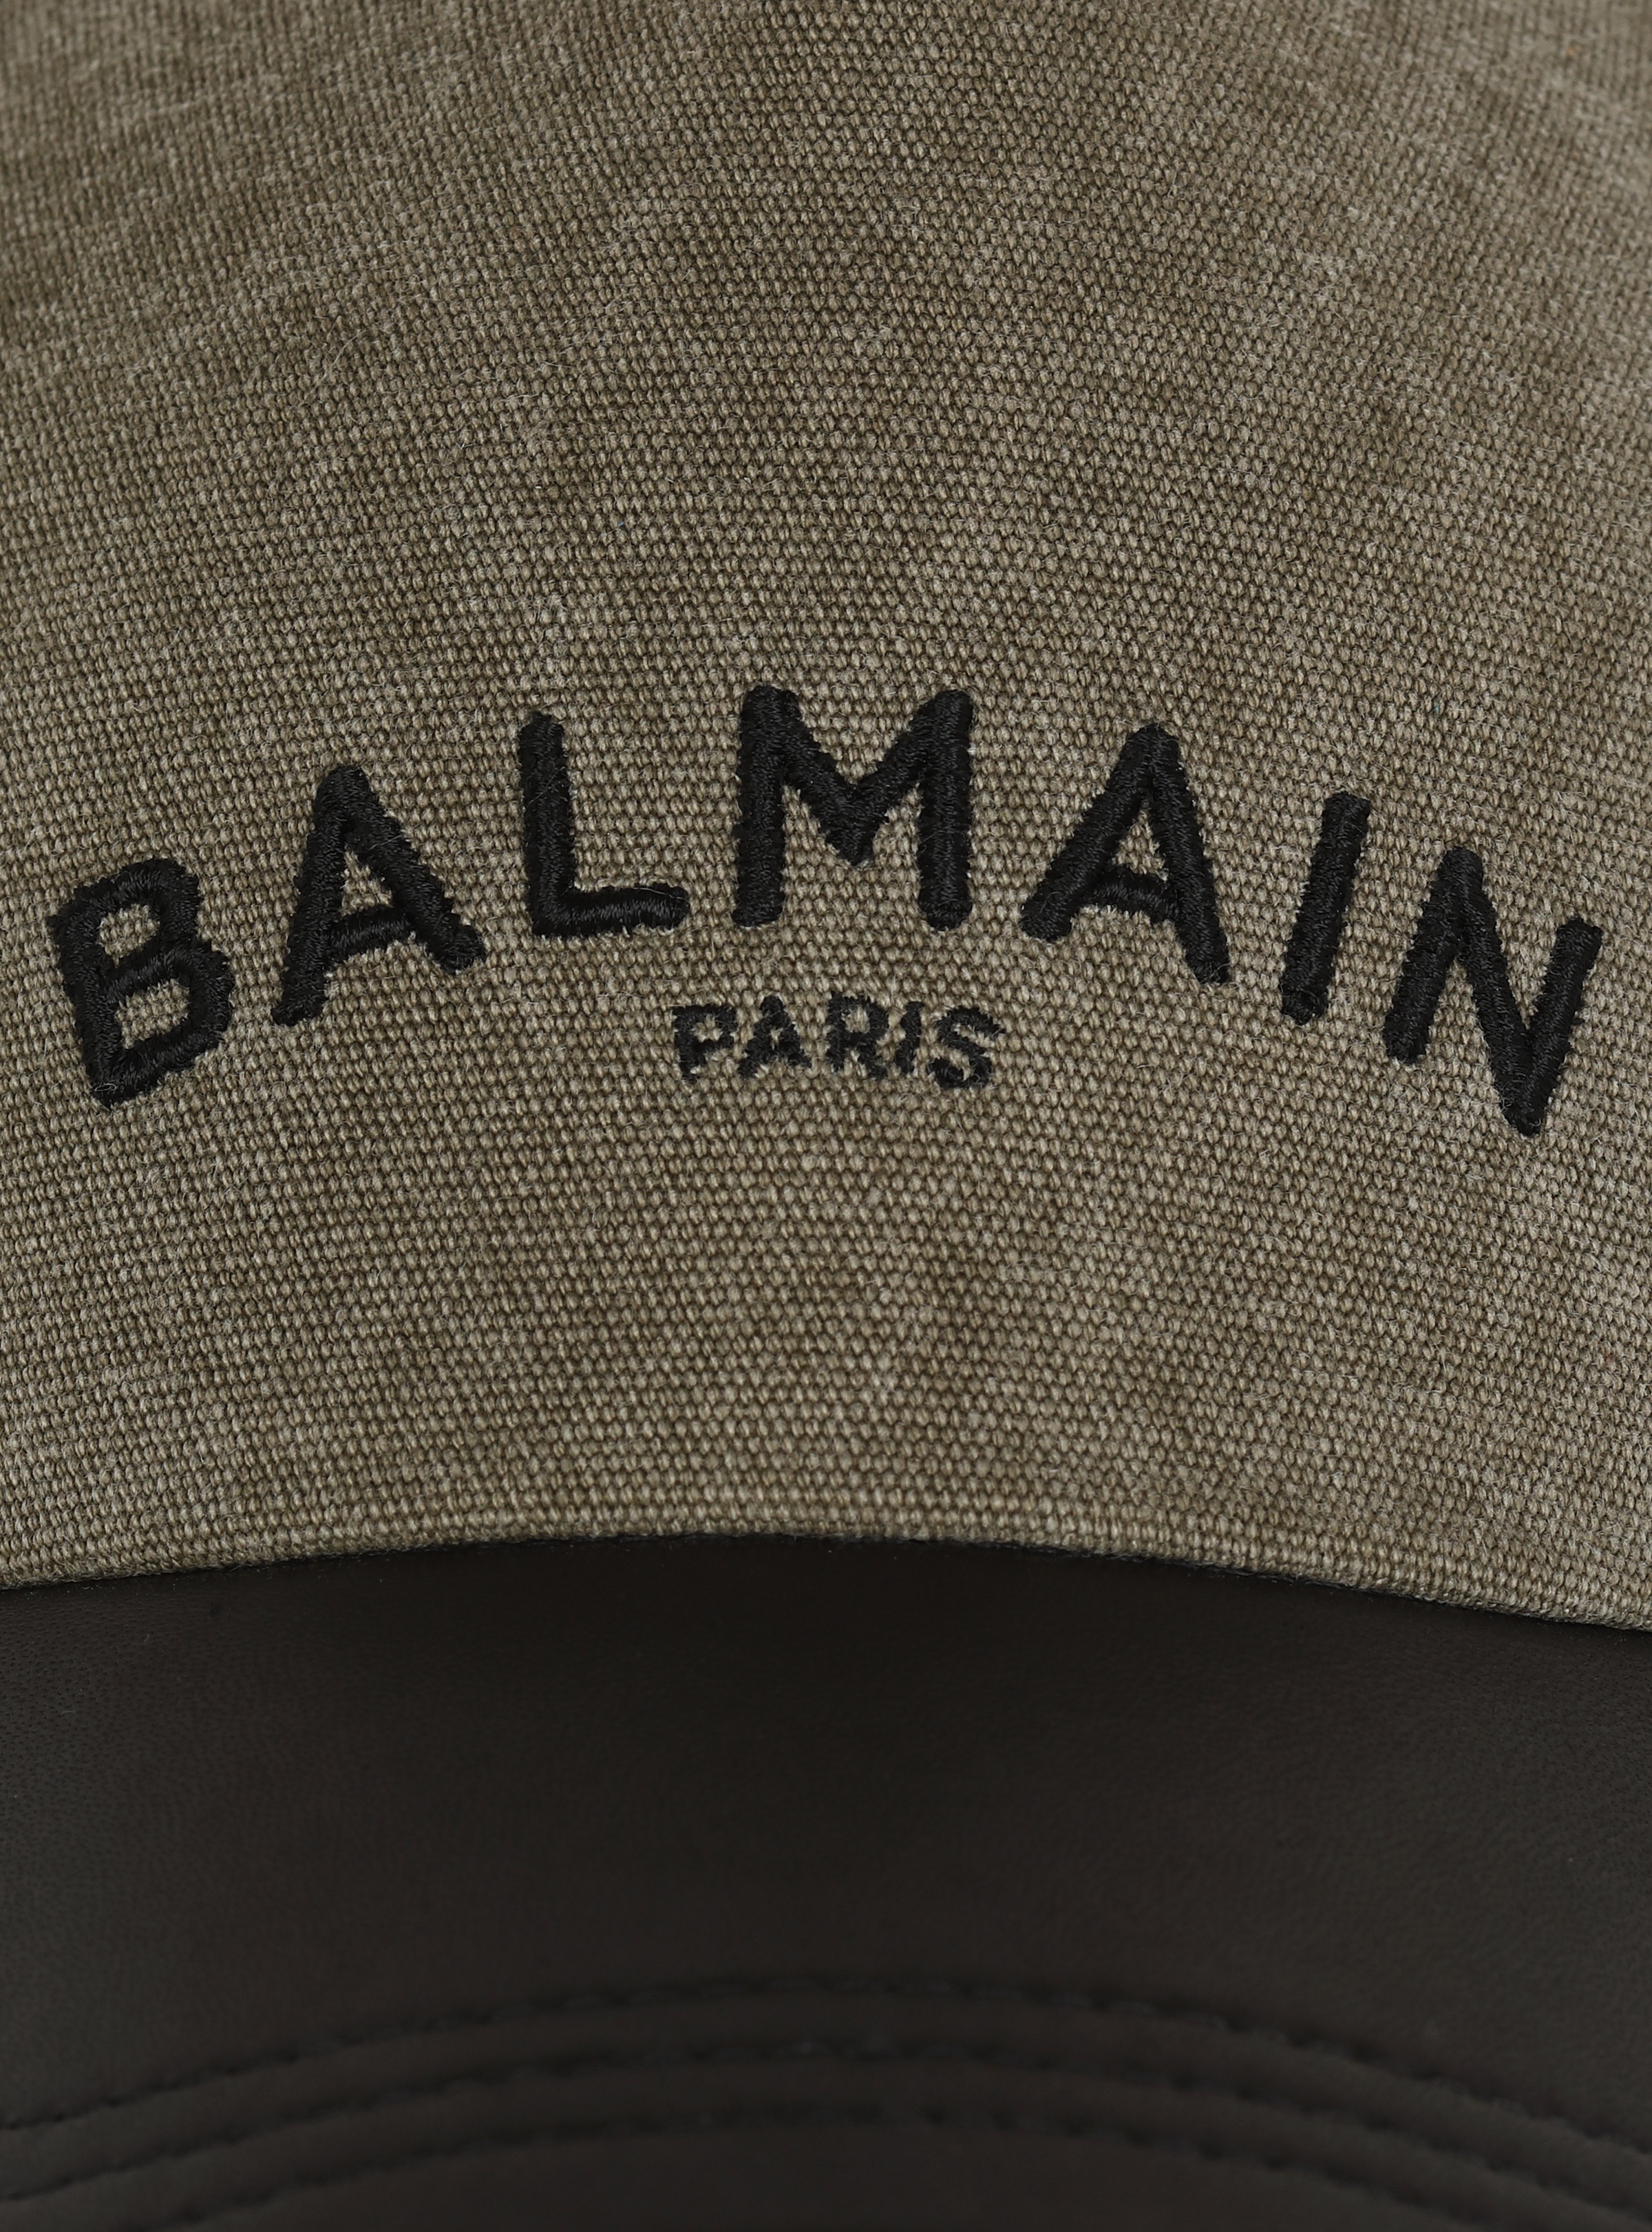 Cotton cap with Balmain logo - 3